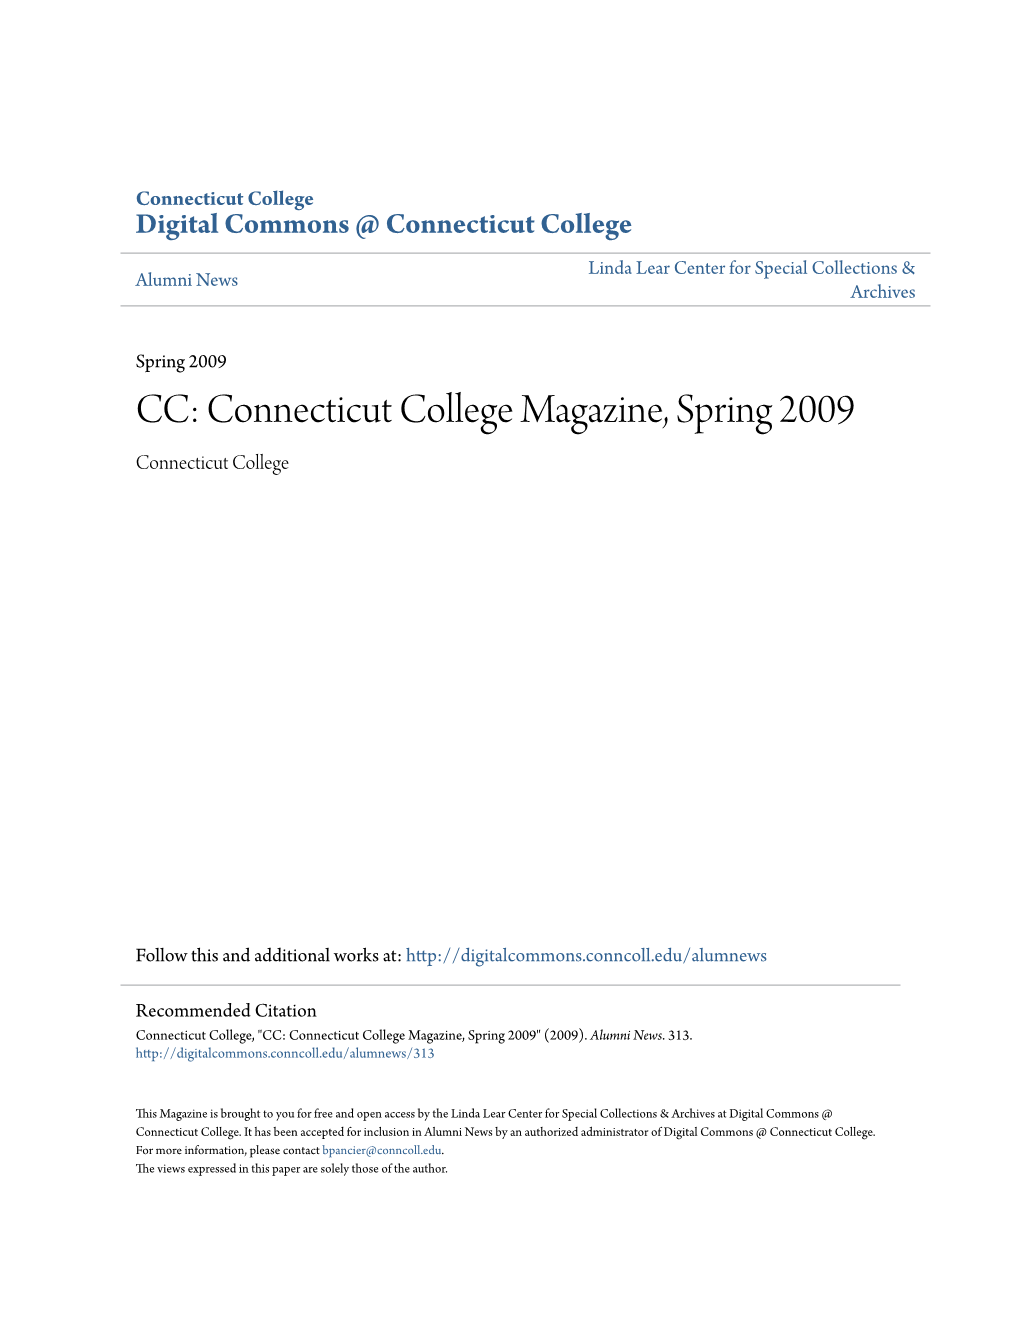 Connecticut College Magazine, Spring 2009 Connecticut College